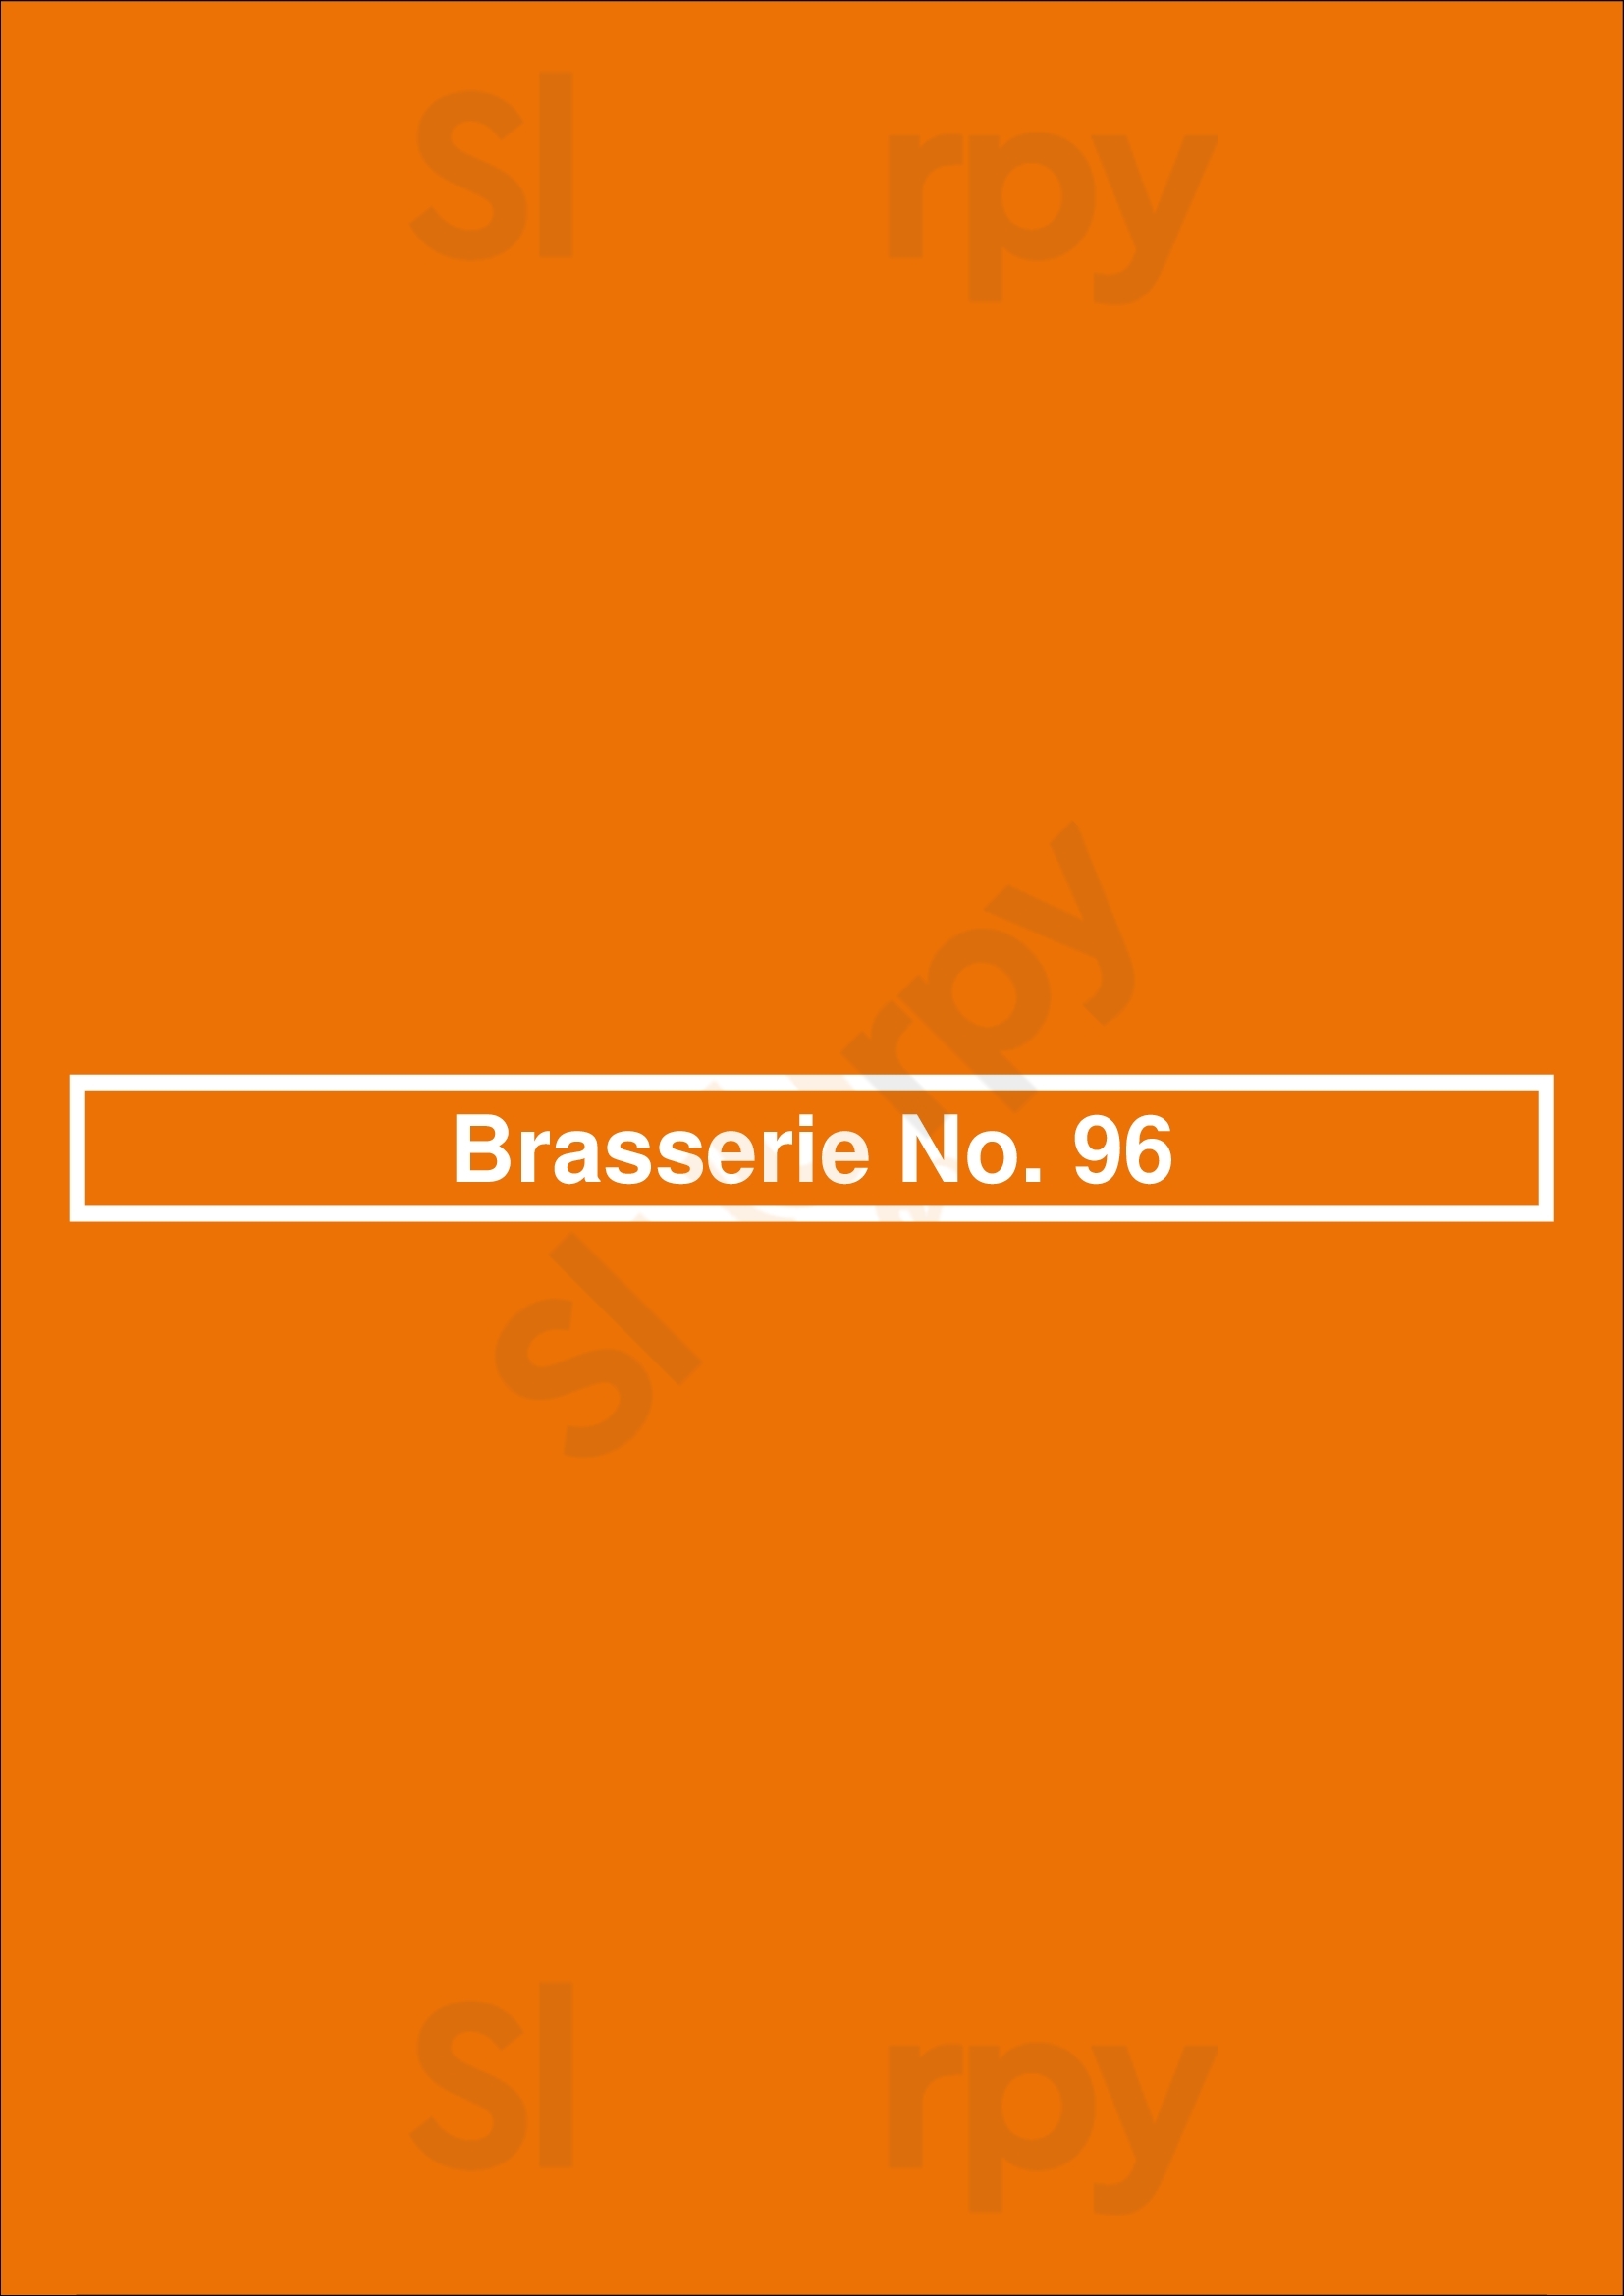 Brasserie No. 96 Wageningen Menu - 1